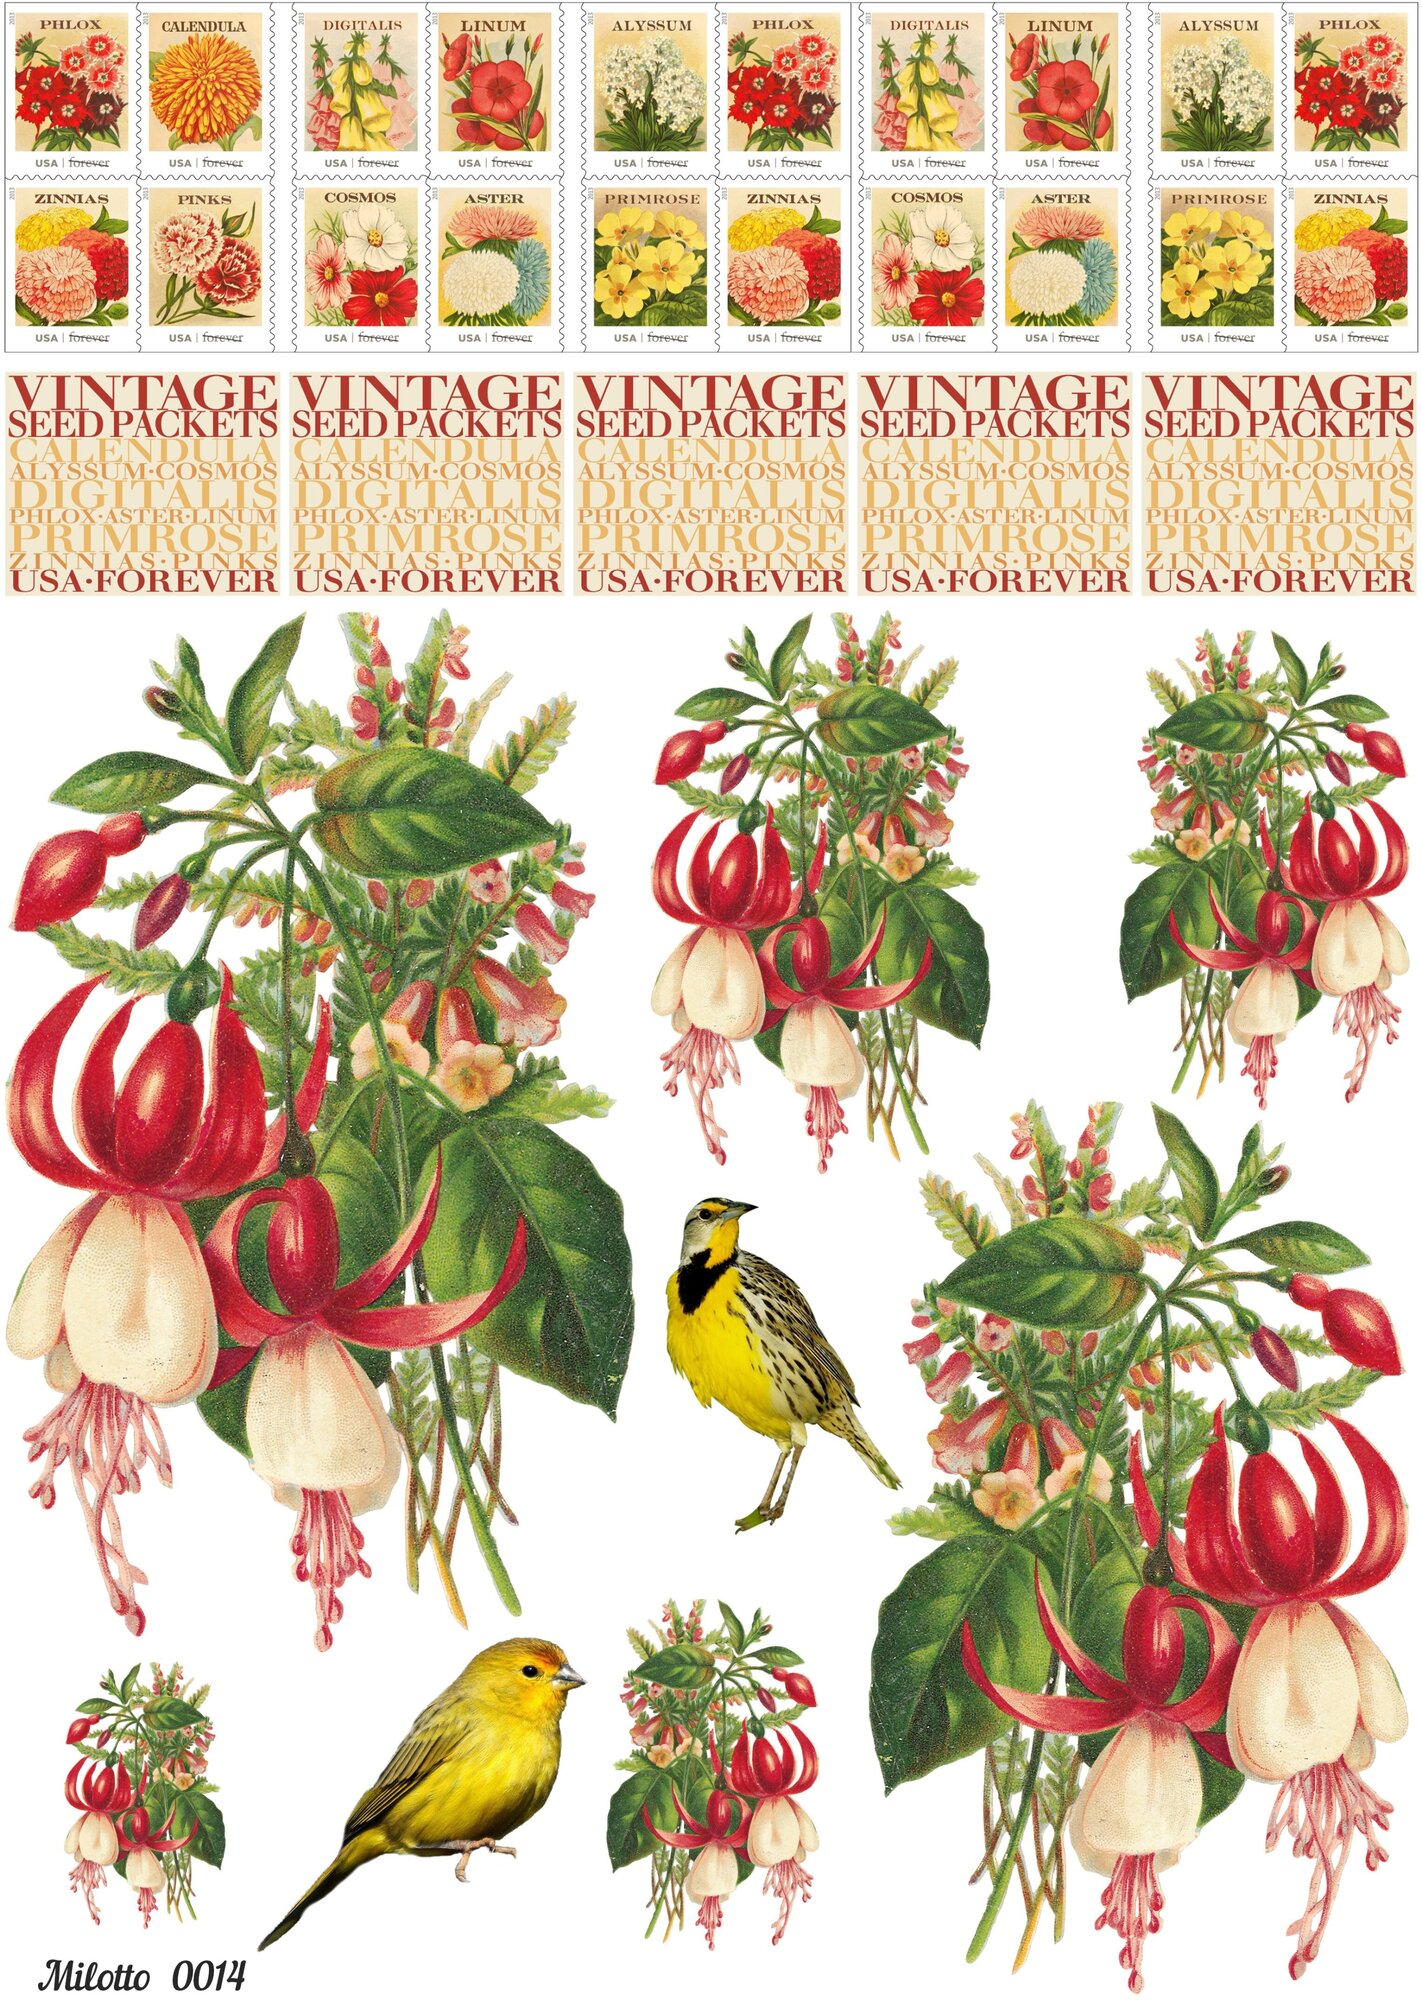 Декупажная карта А4 рисовая салфетка 0014 цветы птицы открытки марки винтаж крафт DIY Milotto